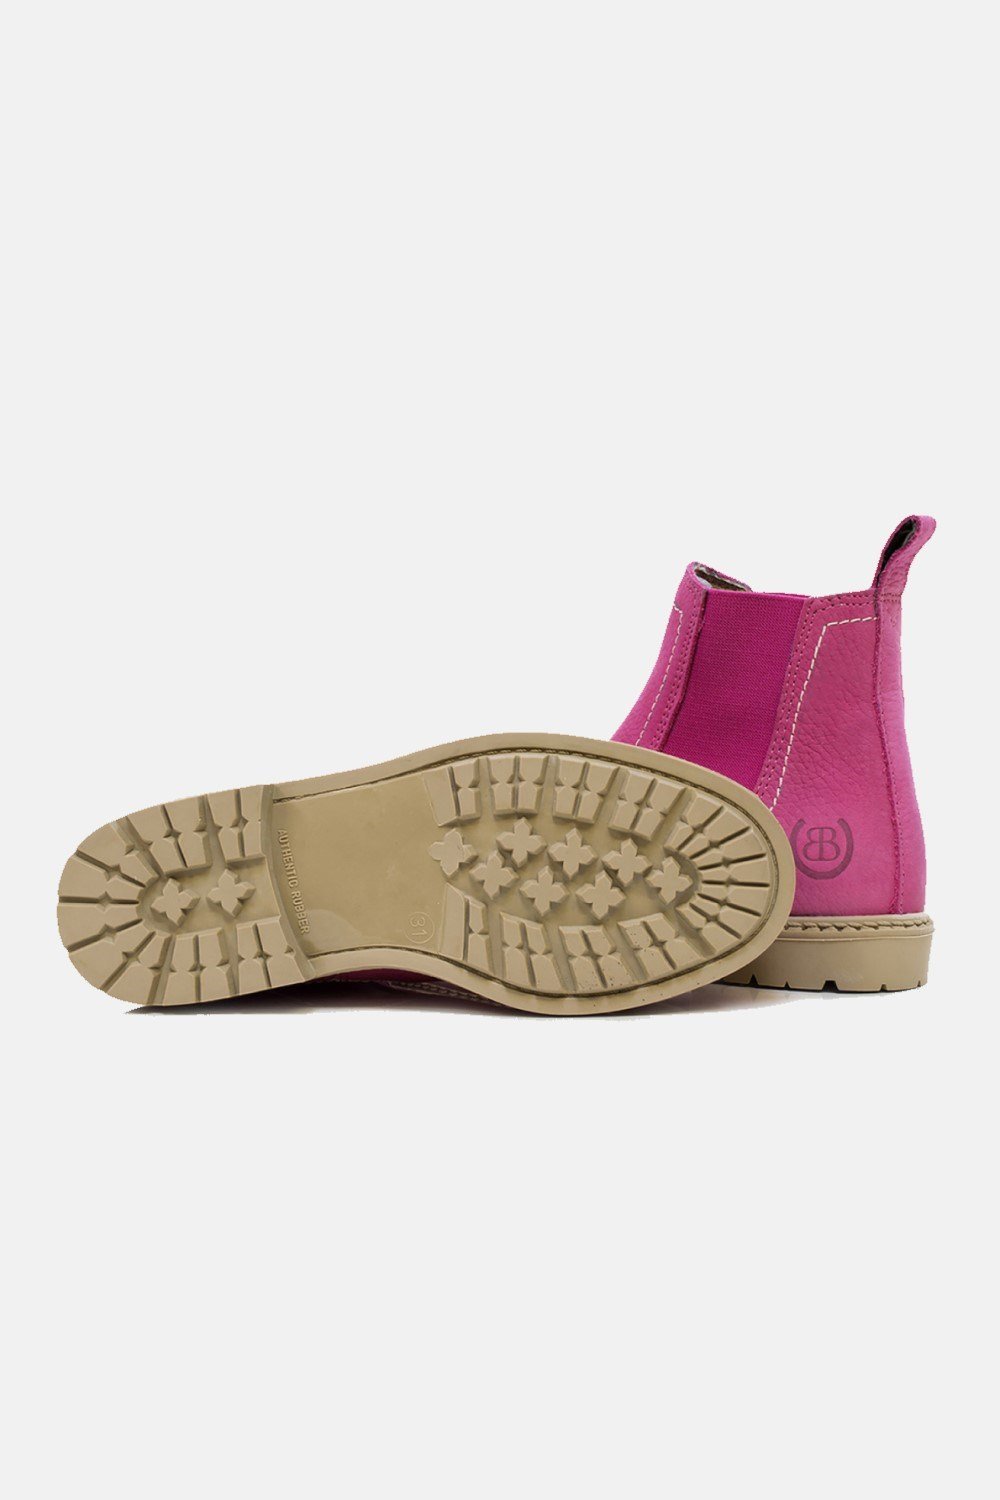 Dakota Womens Waterproof Country Boots